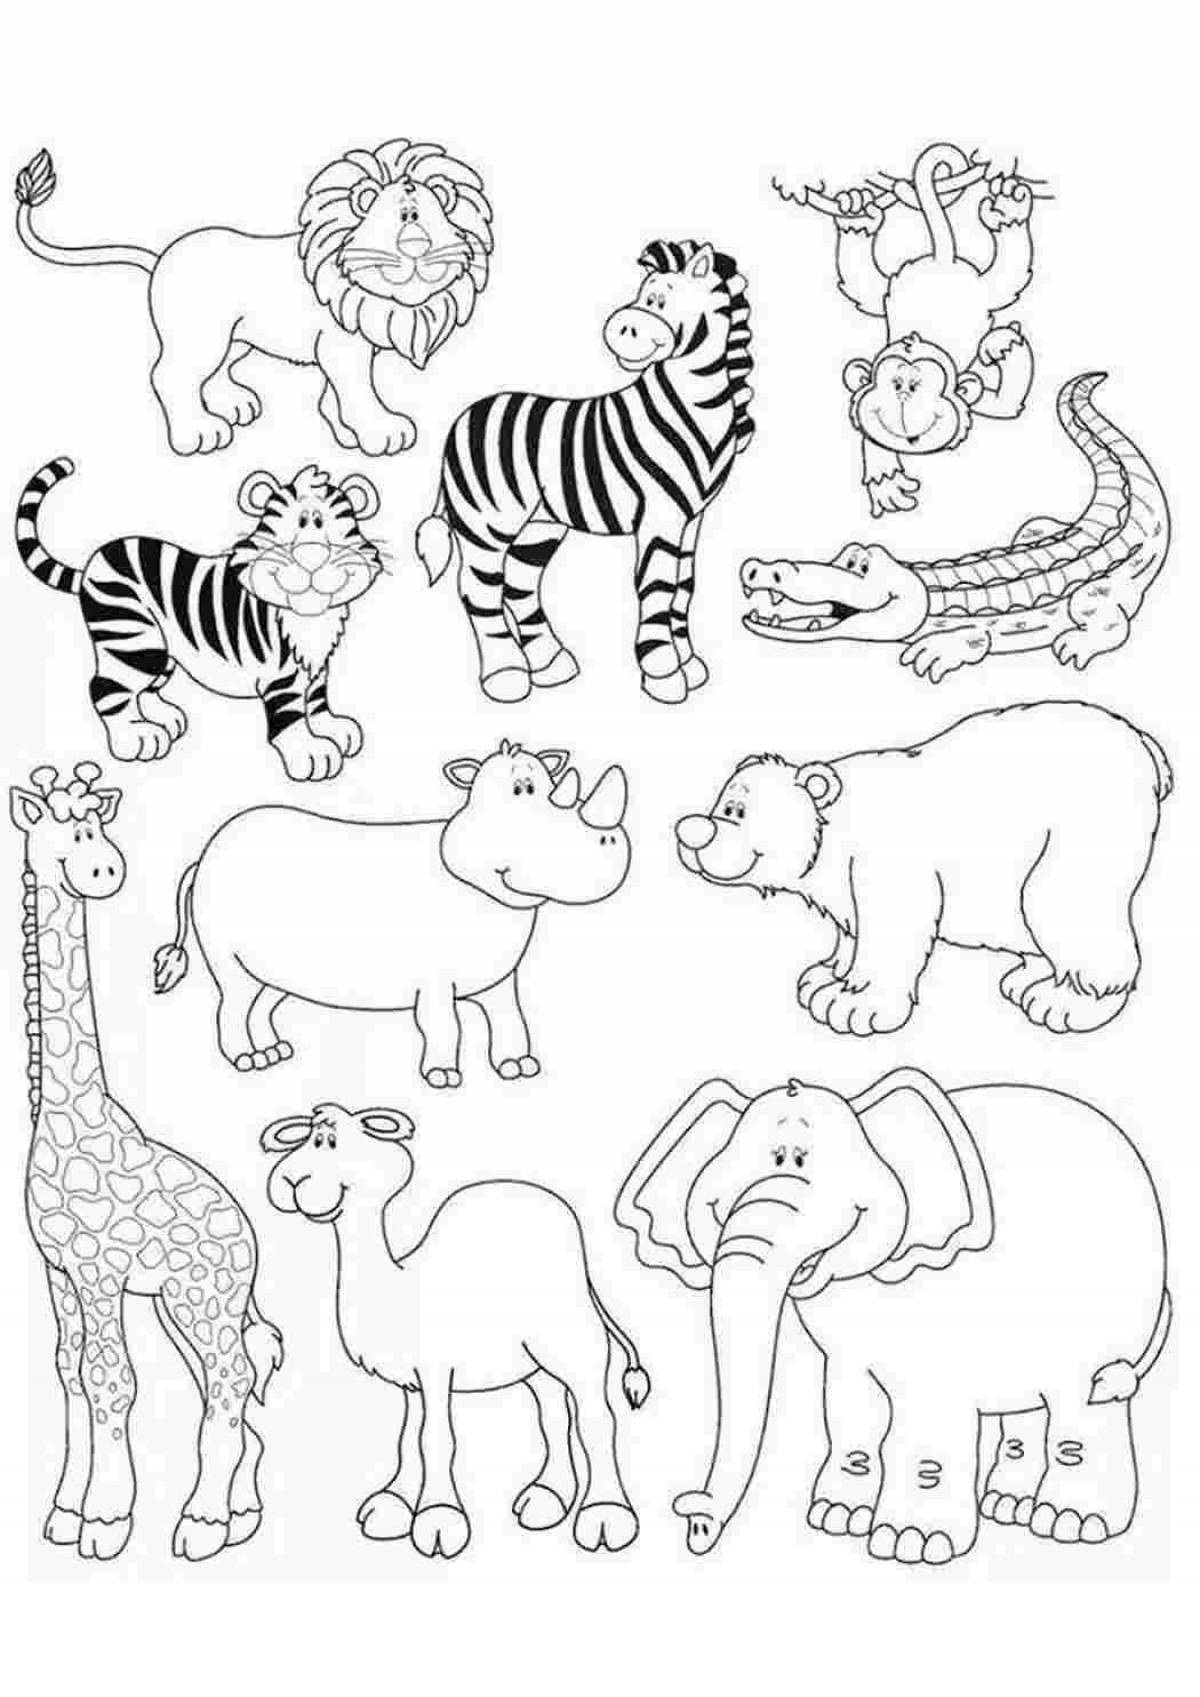 Игривая страница раскраски африканских животных для детей 4-5 лет